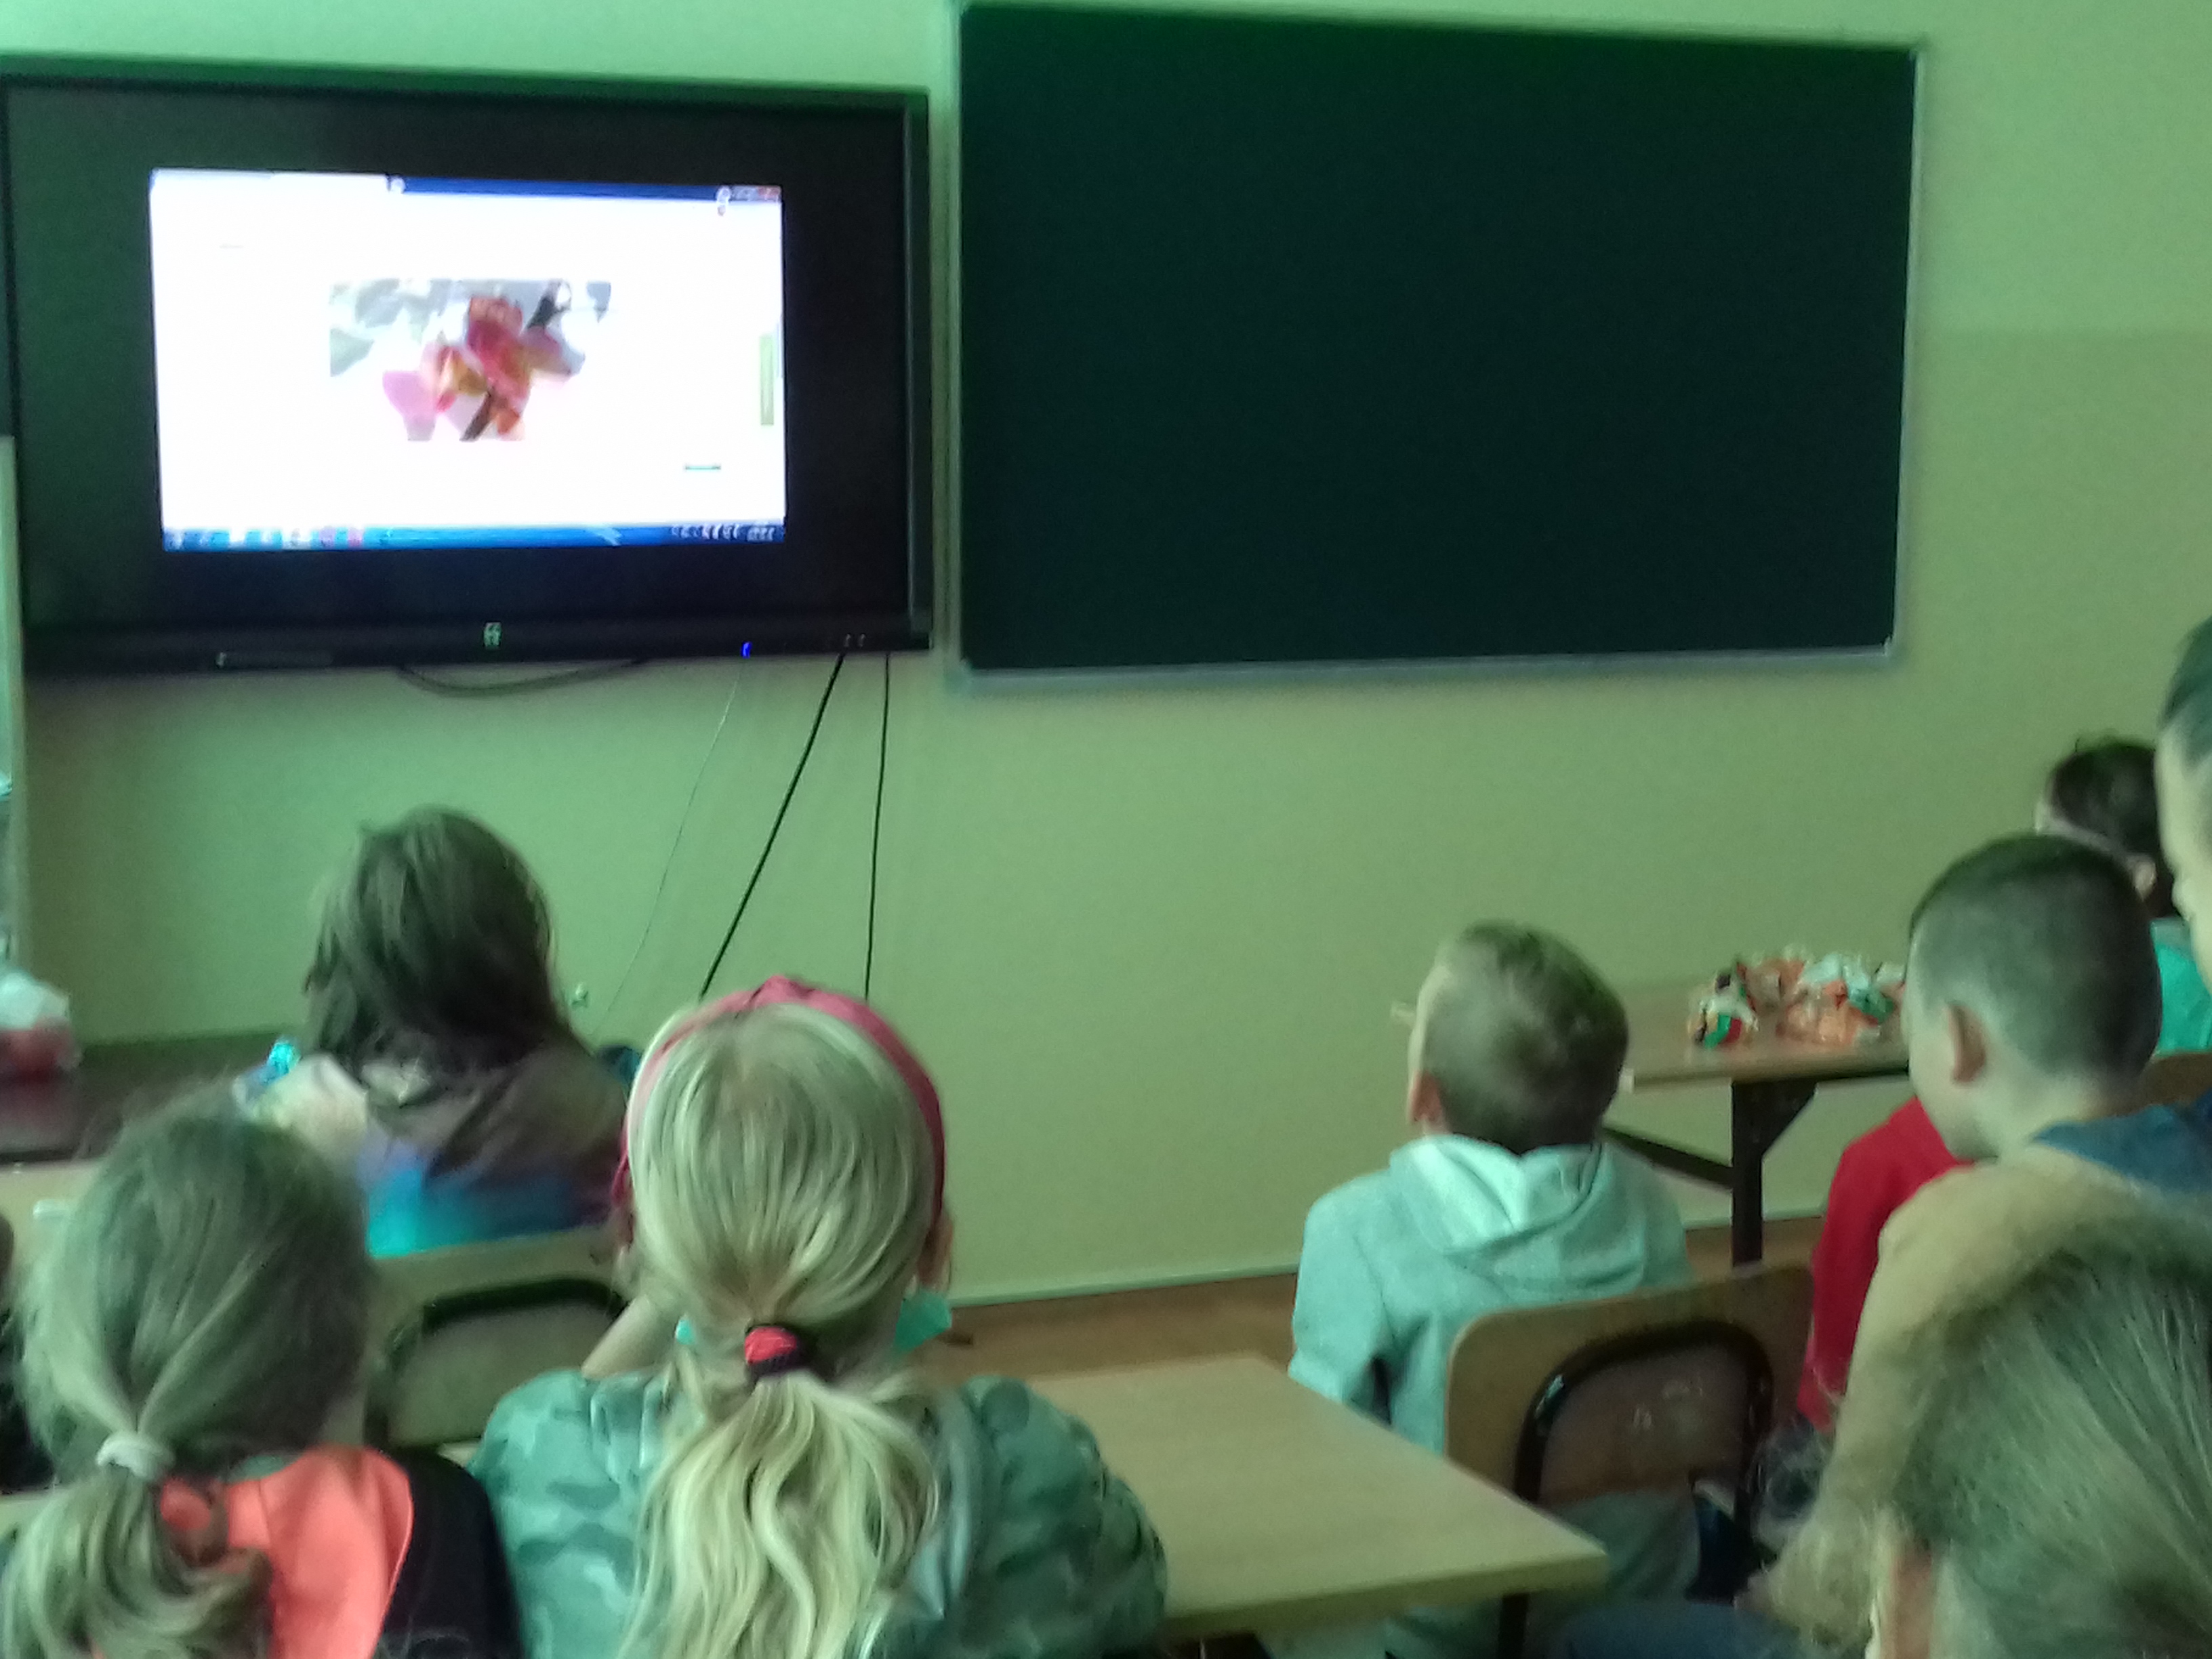 Uczniowie oglądający film o rozwoju jabłek.